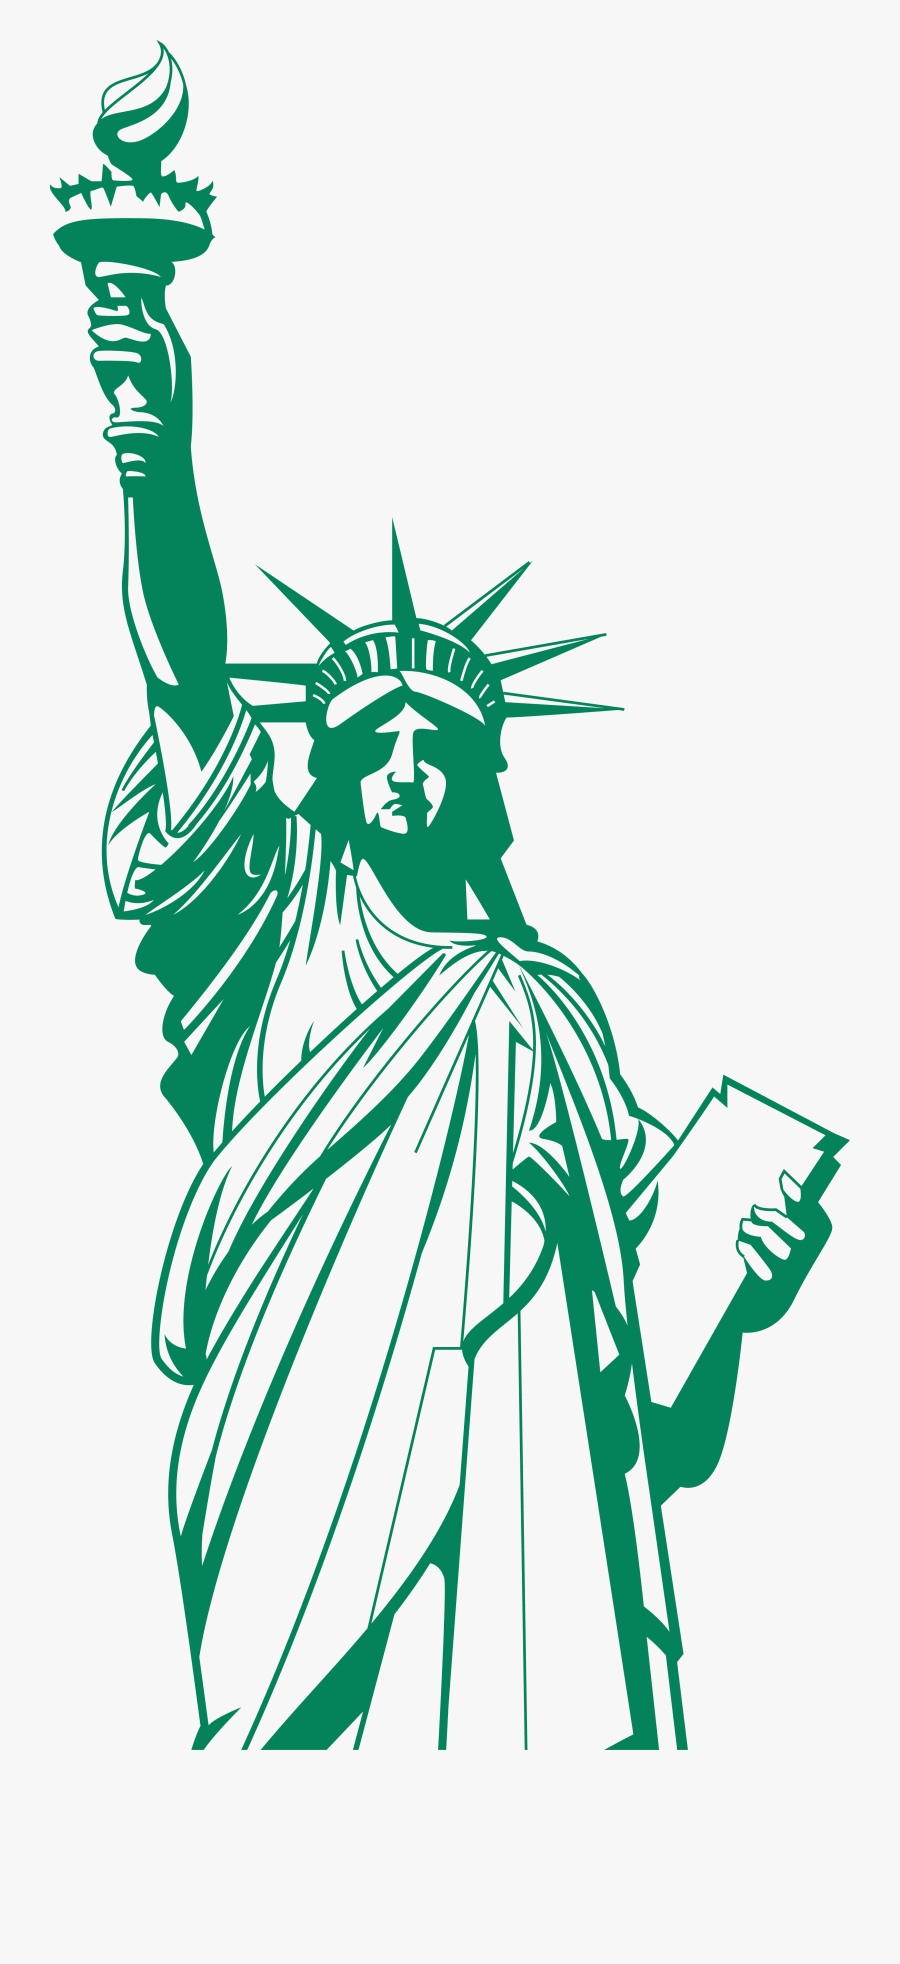 Statue Of Liberty Logos - Statue Of Liberty Logo Png, Transparent Clipart